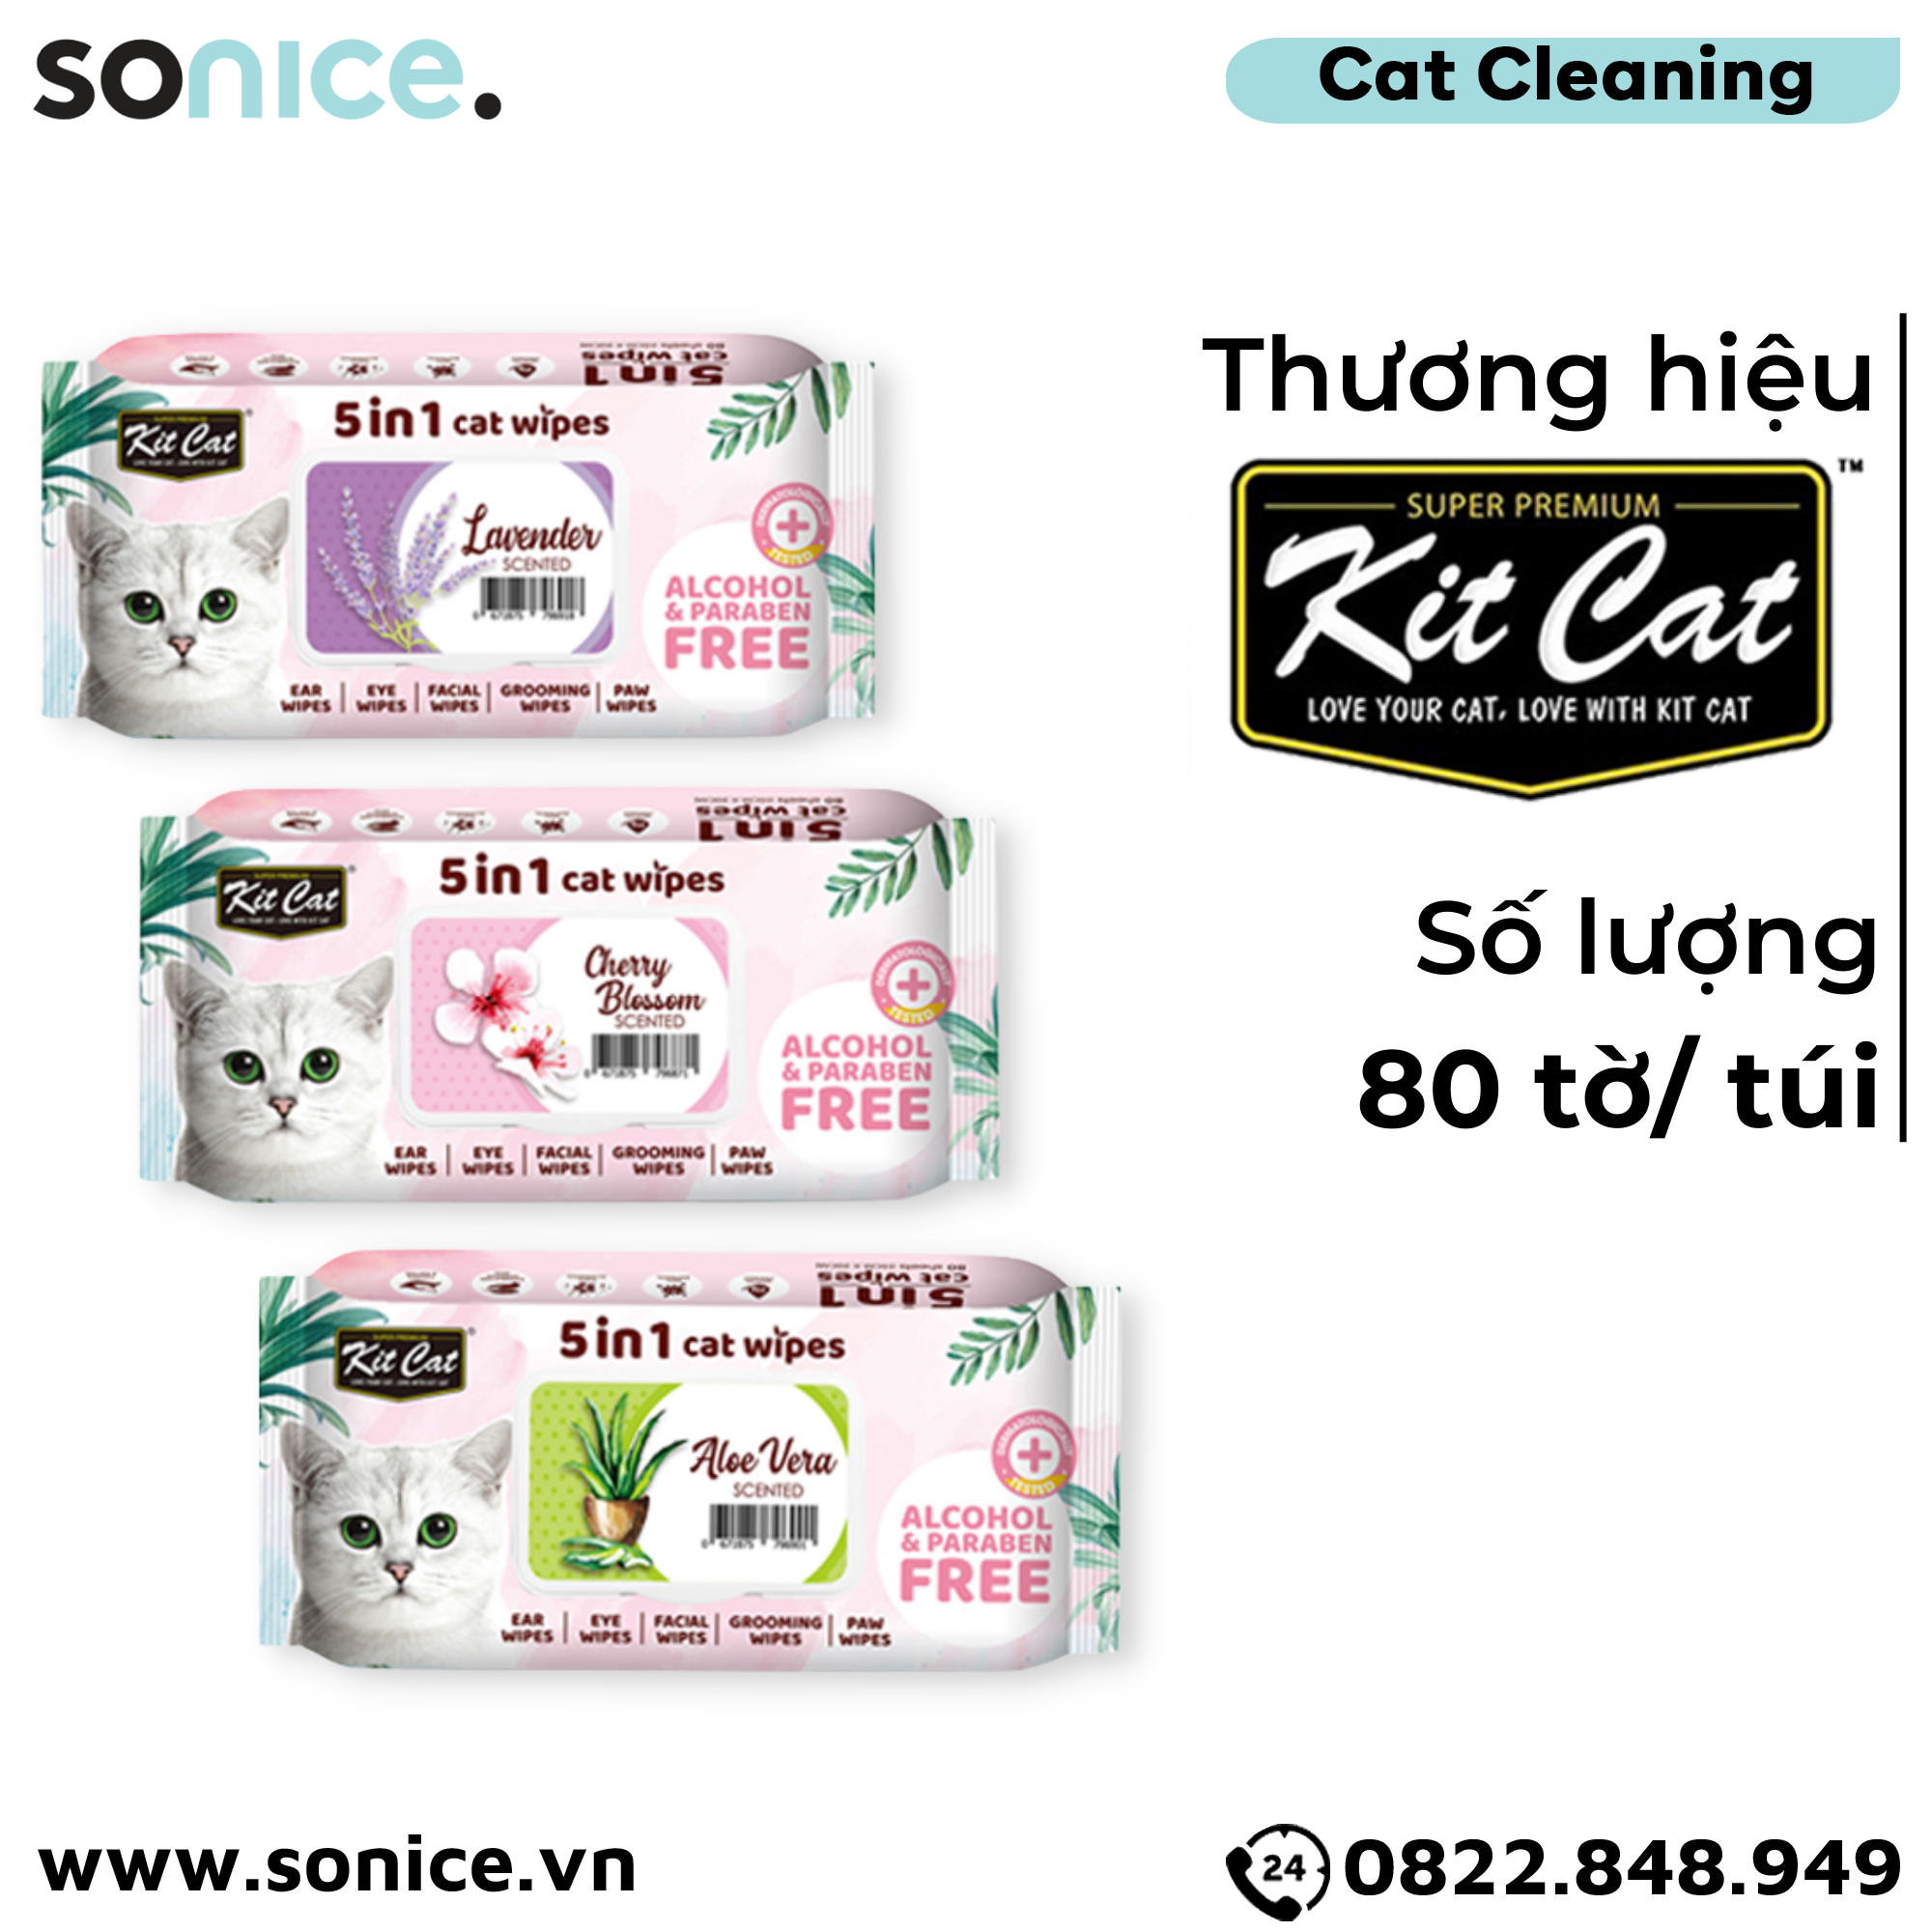  Khăn giấy ướt vệ sinh Kit Cat 5in1 Cat Wipes - Vệ sinh toàn thân cho Mèo SONICE. 